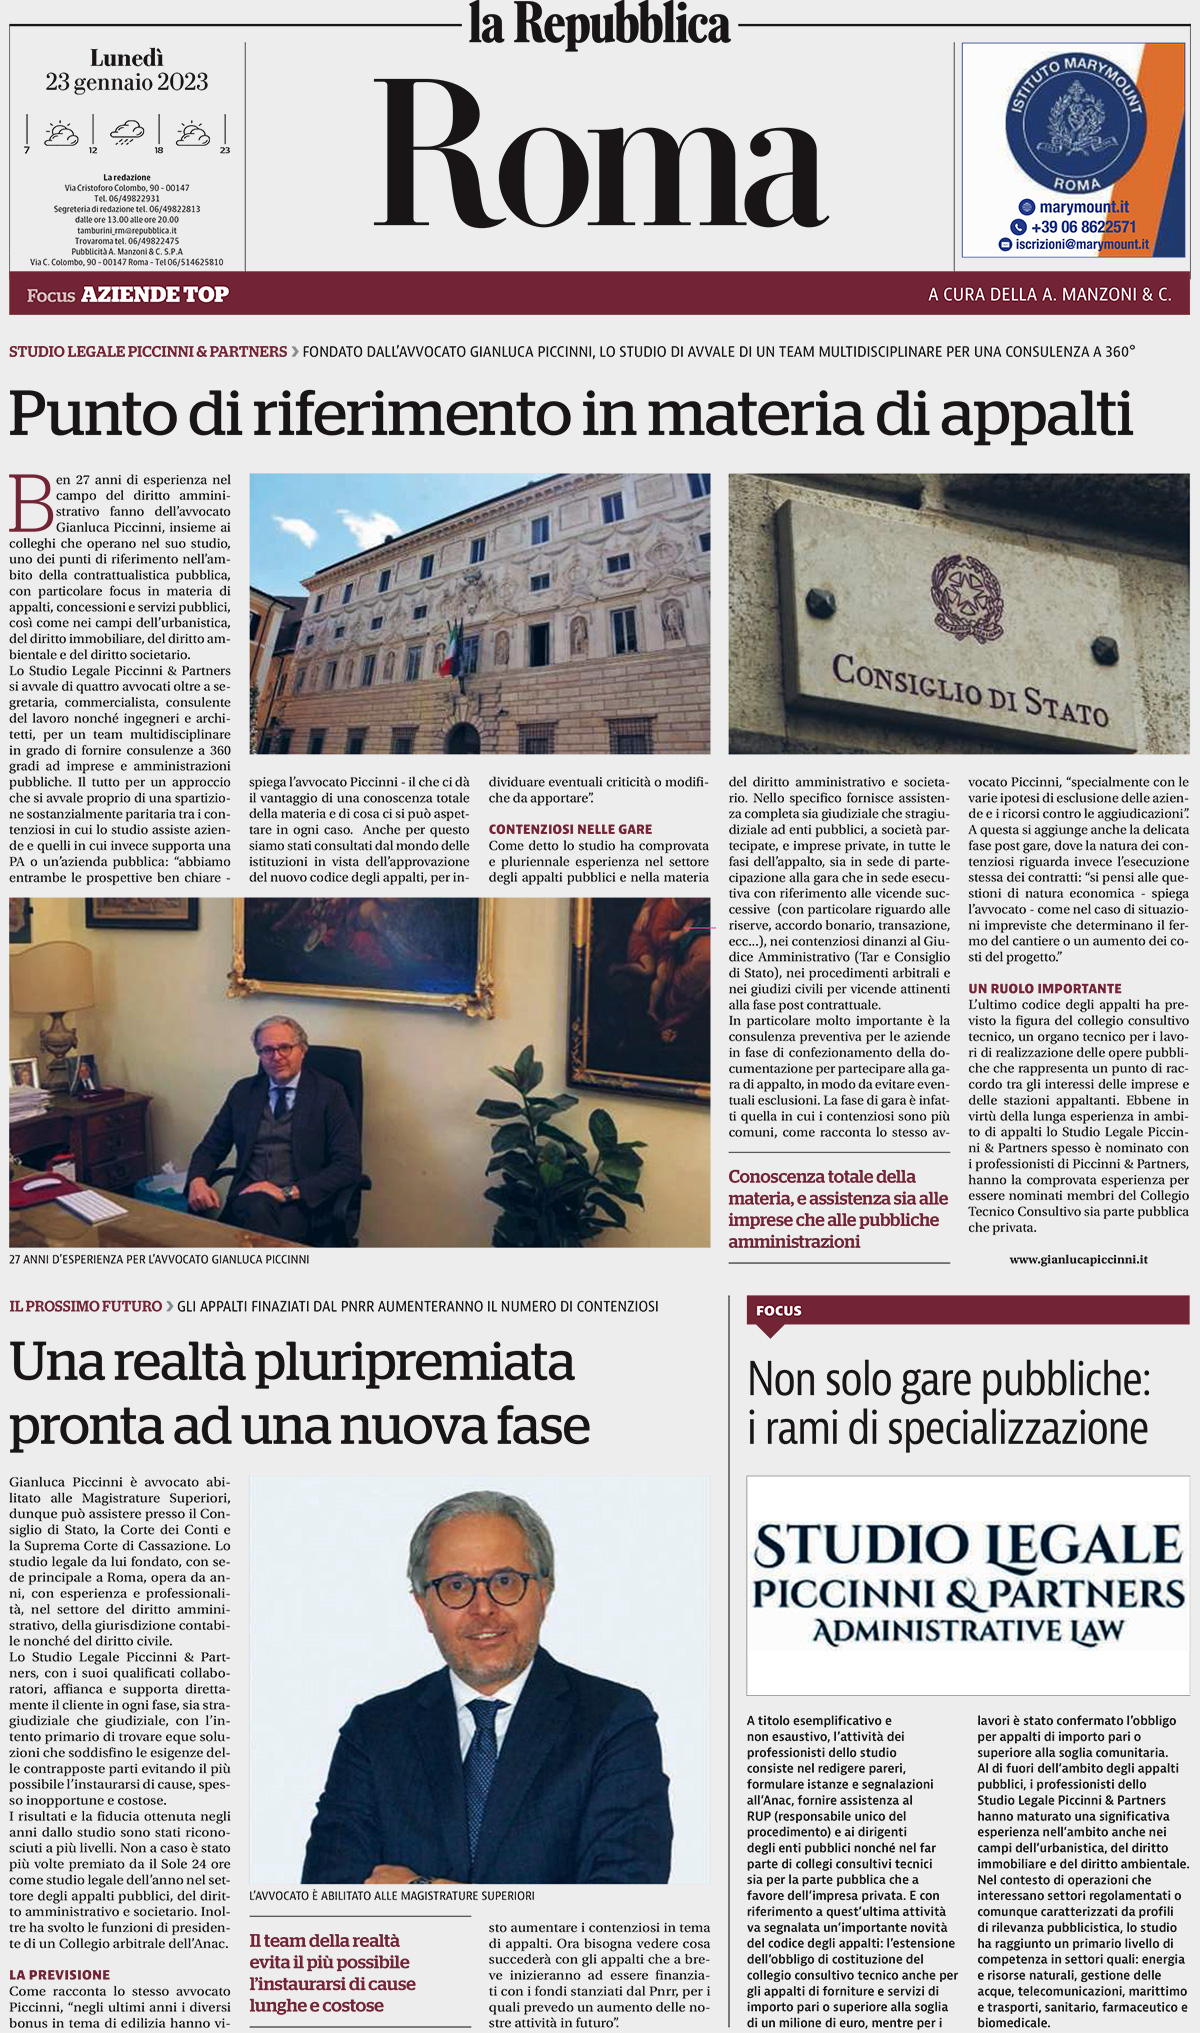 Repubblica, 23/01/2023: Piccinni & Partners